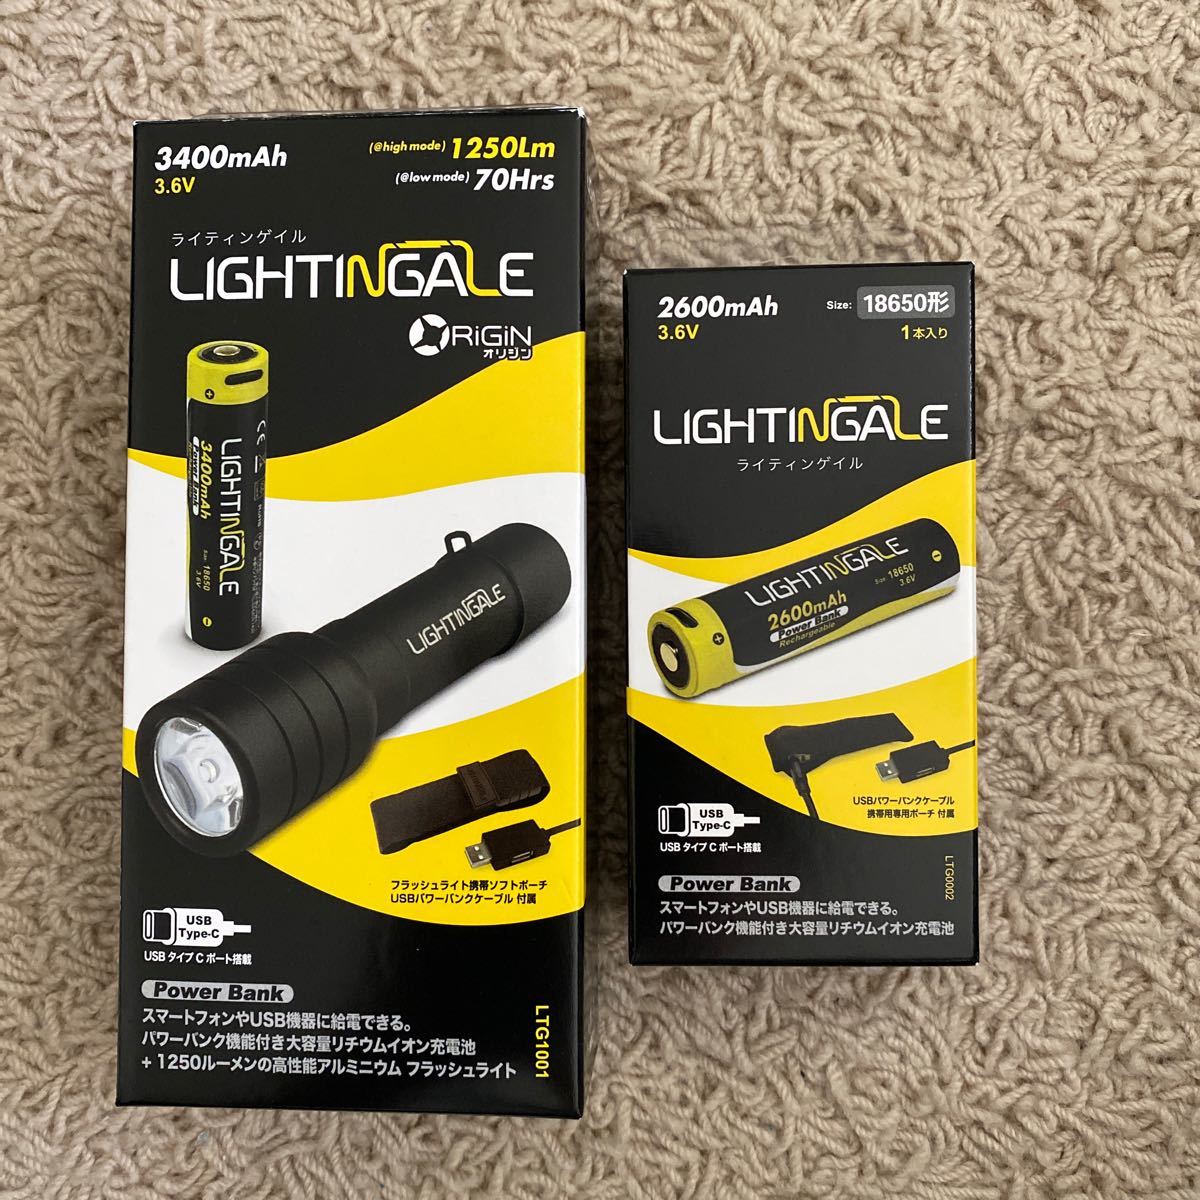 スマホ等にも給電できる充電池付LEDフラッシュライト LTG1001、リチウムイオン充電池2600mA/USB-TYPE-C